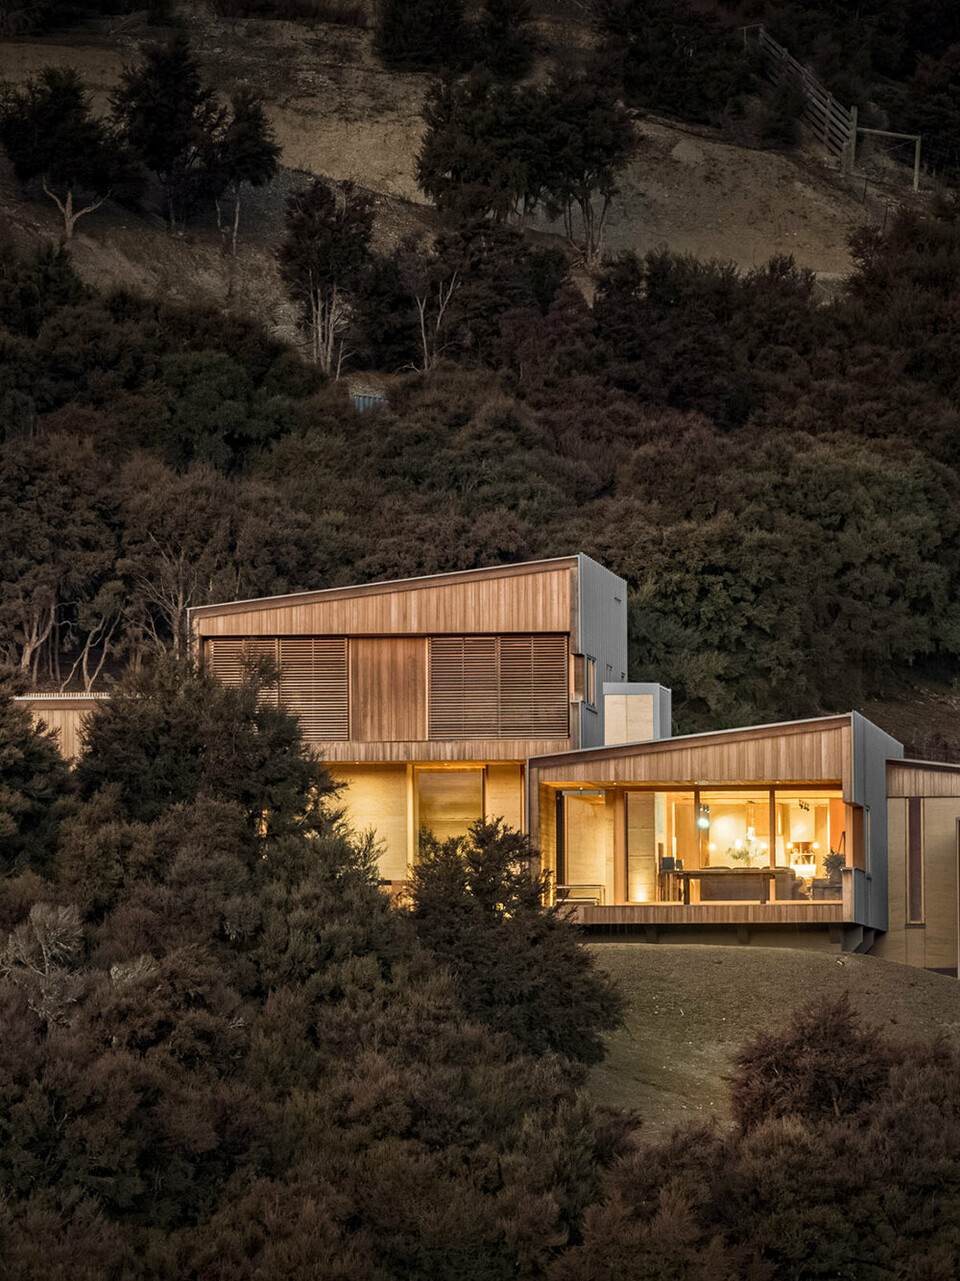 Abendaufnahme des von innen beleuchteten Einfamilienhauses, eingebettet in die Hügellandschaft rund um Wanaka, Neuseeland. Ein Teil des Gebäudes wird vom Buschwald verdeckt.